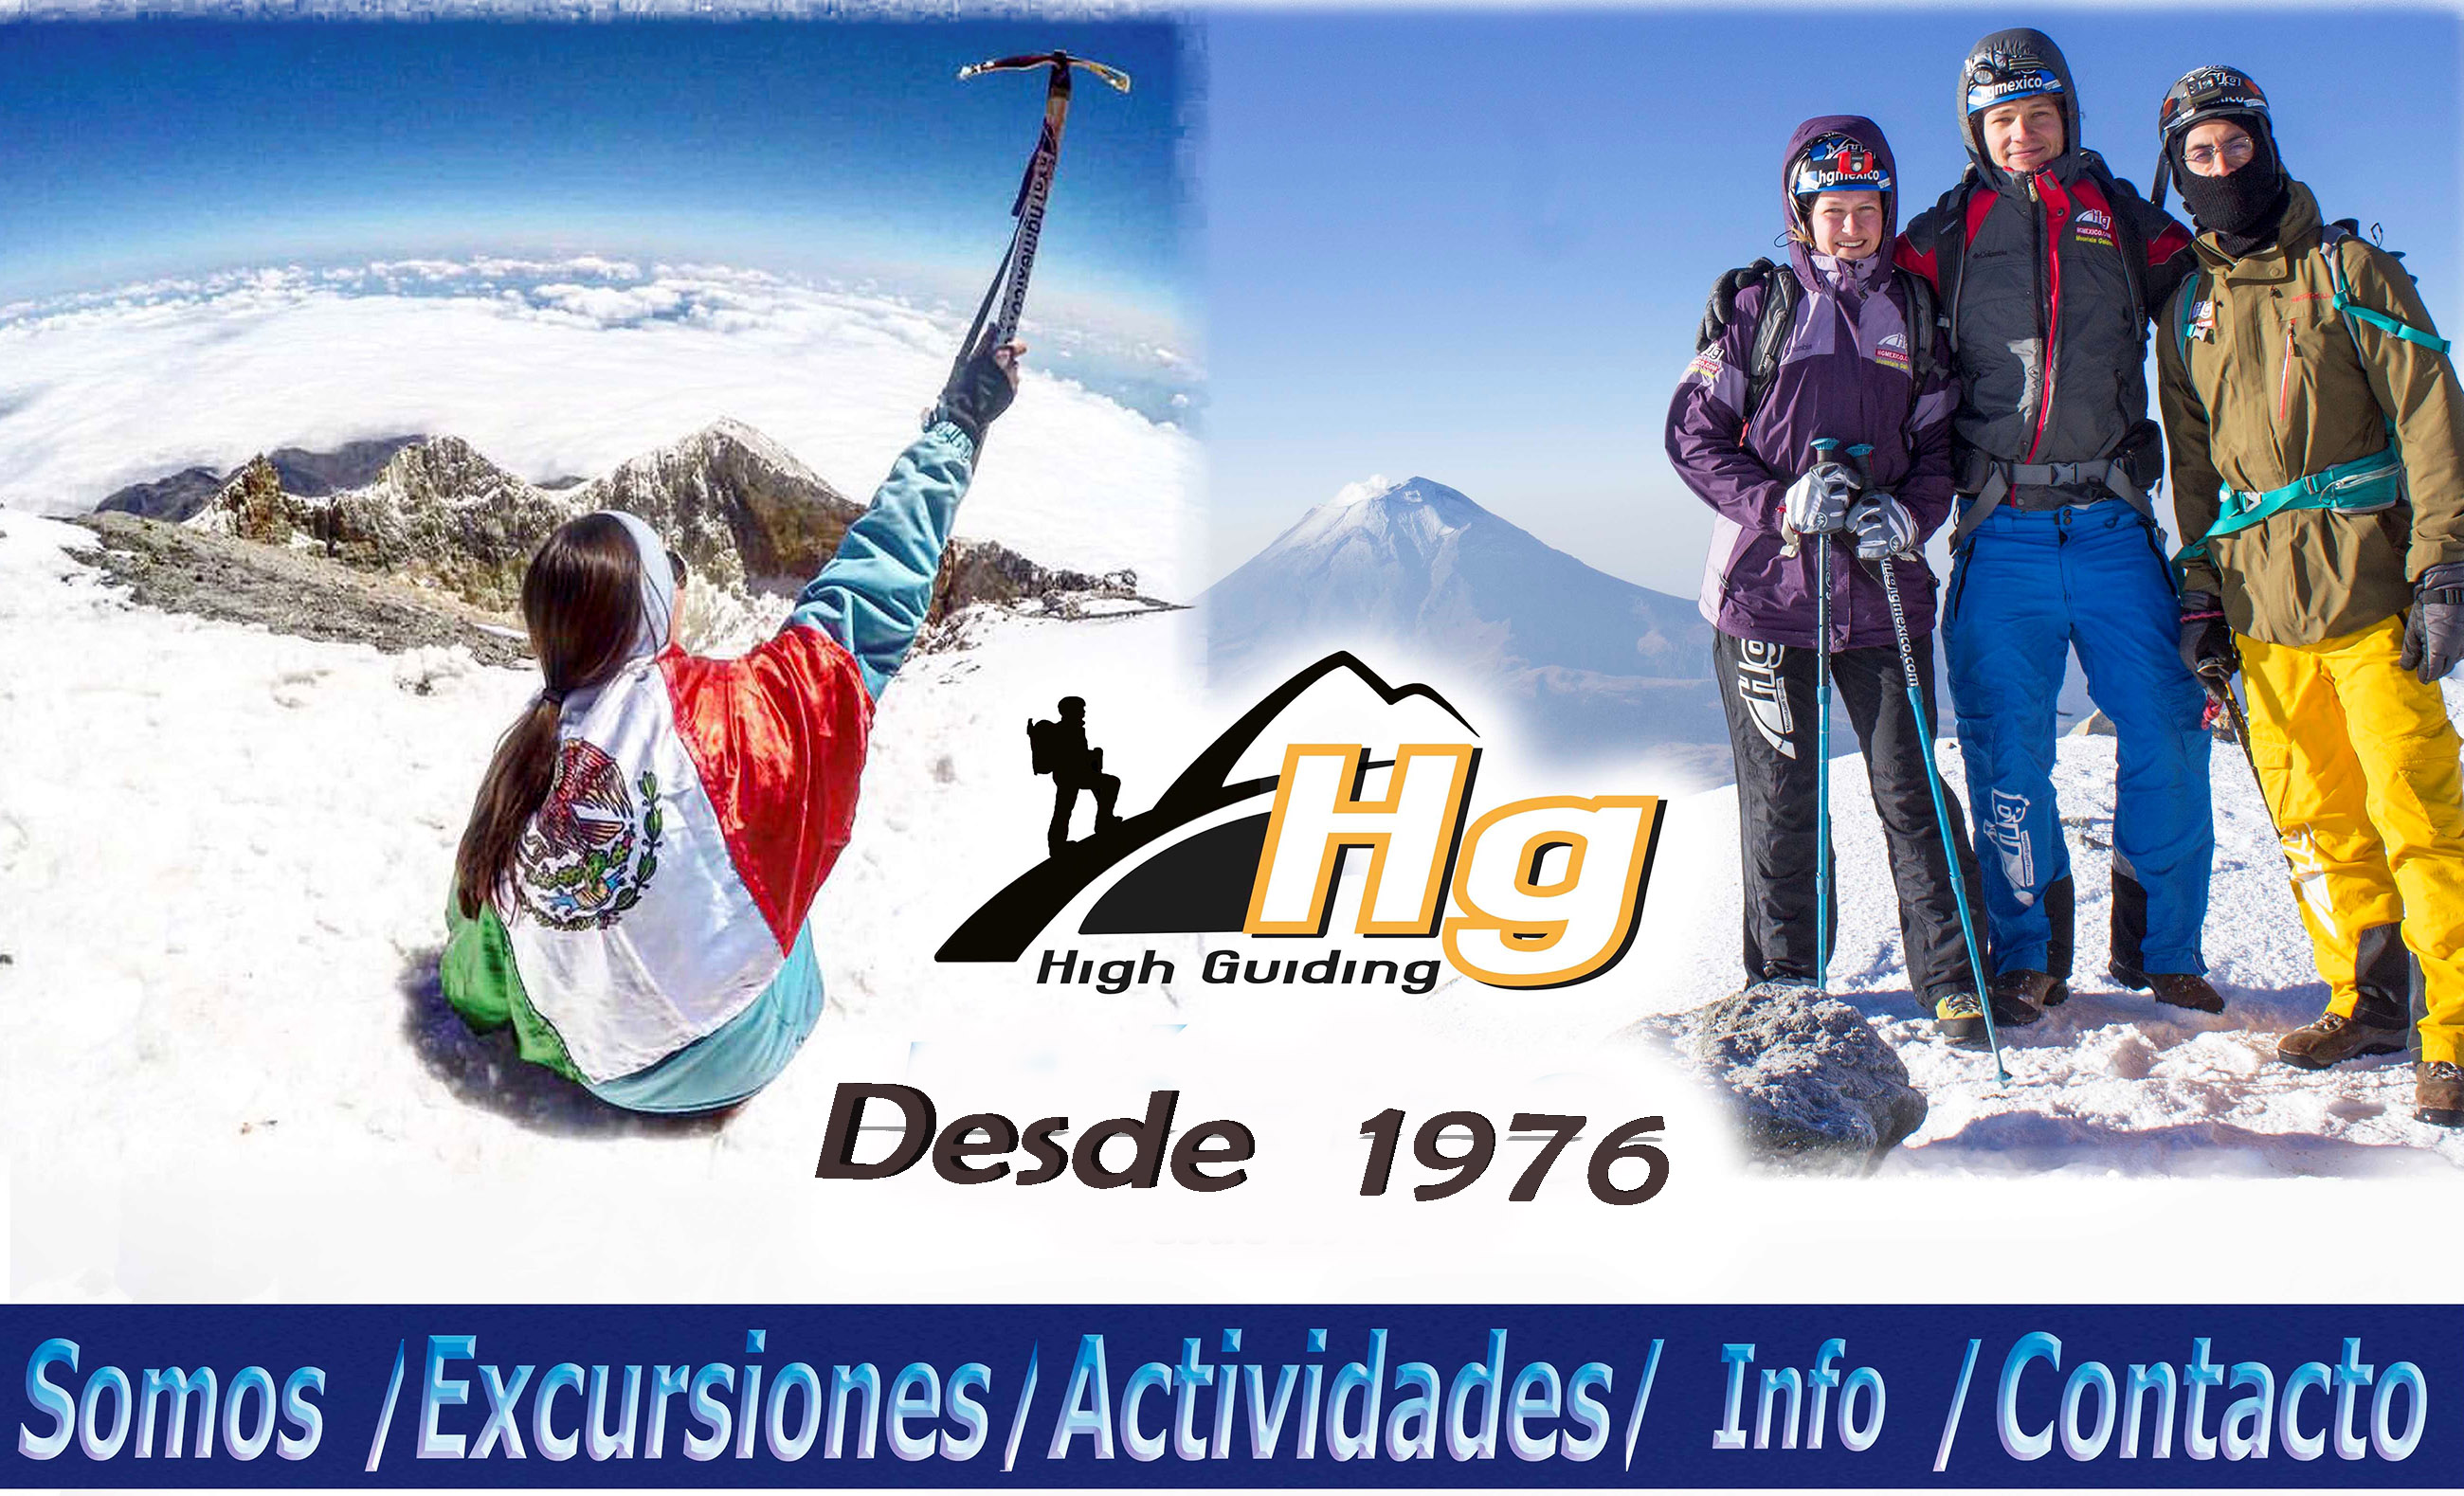 Pico de Orizaba Iztaccihuatl mountain guides 